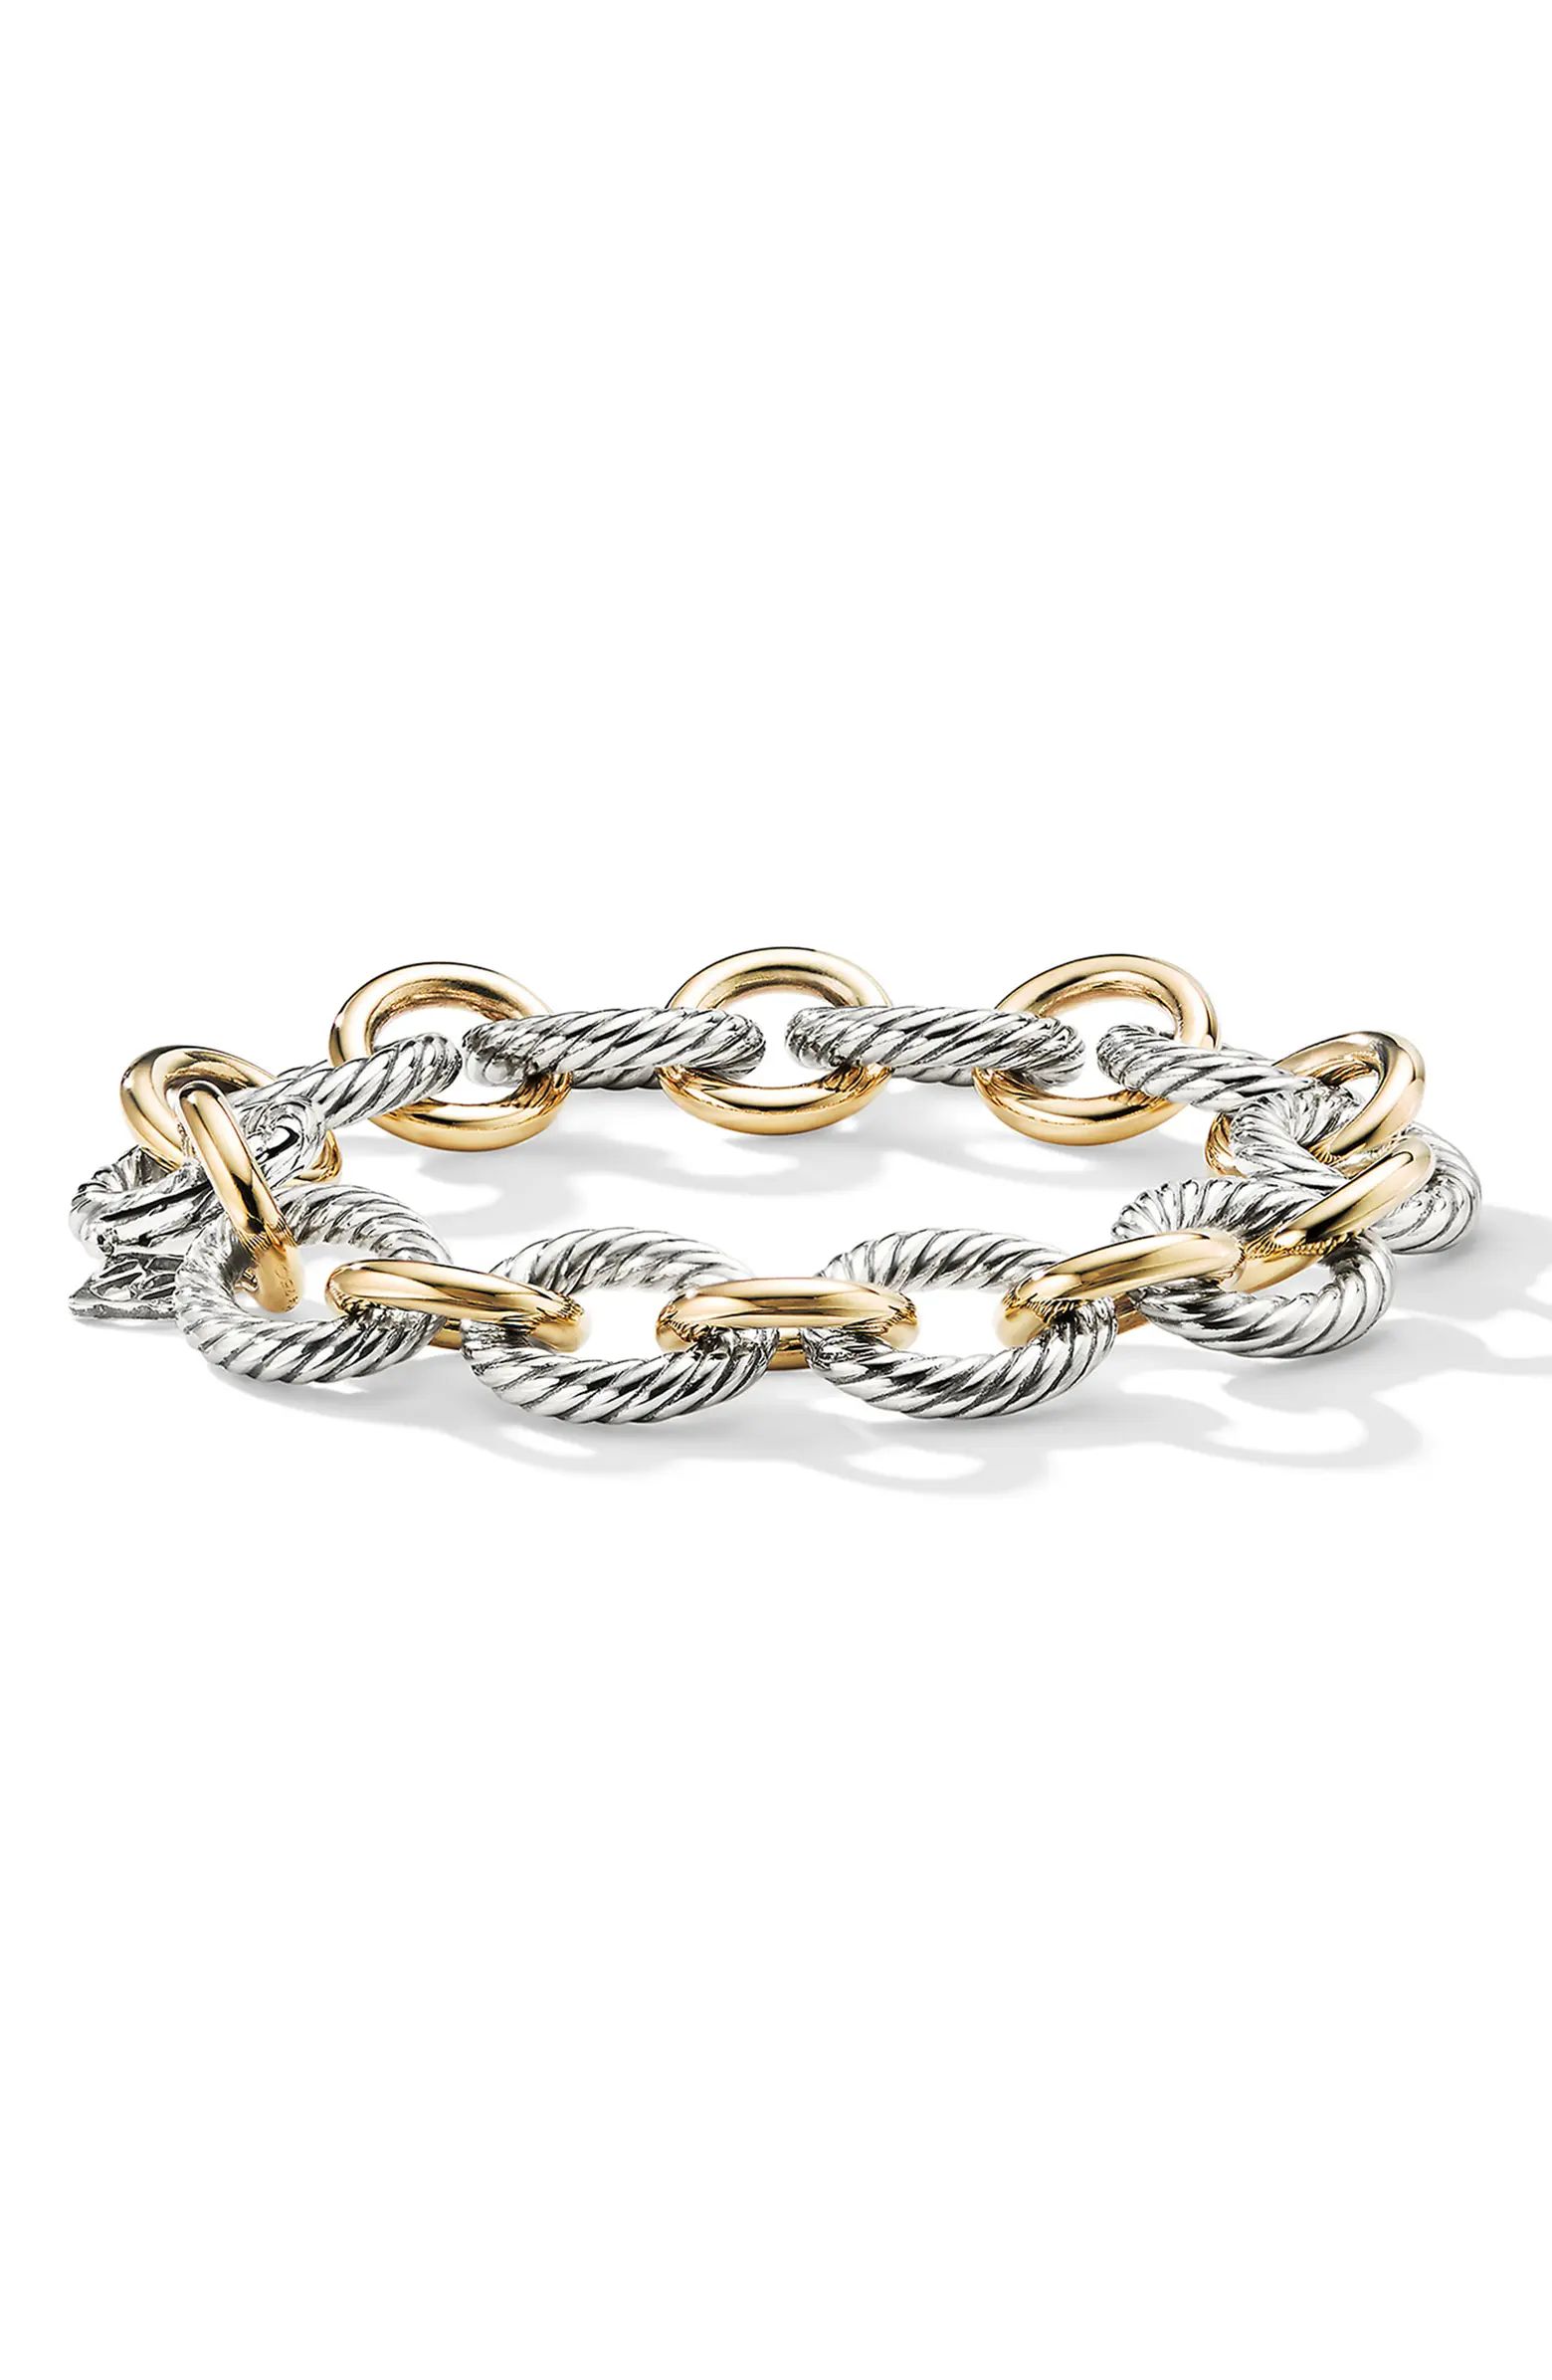 'Oval' Large Link Bracelet with Gold | Nordstrom